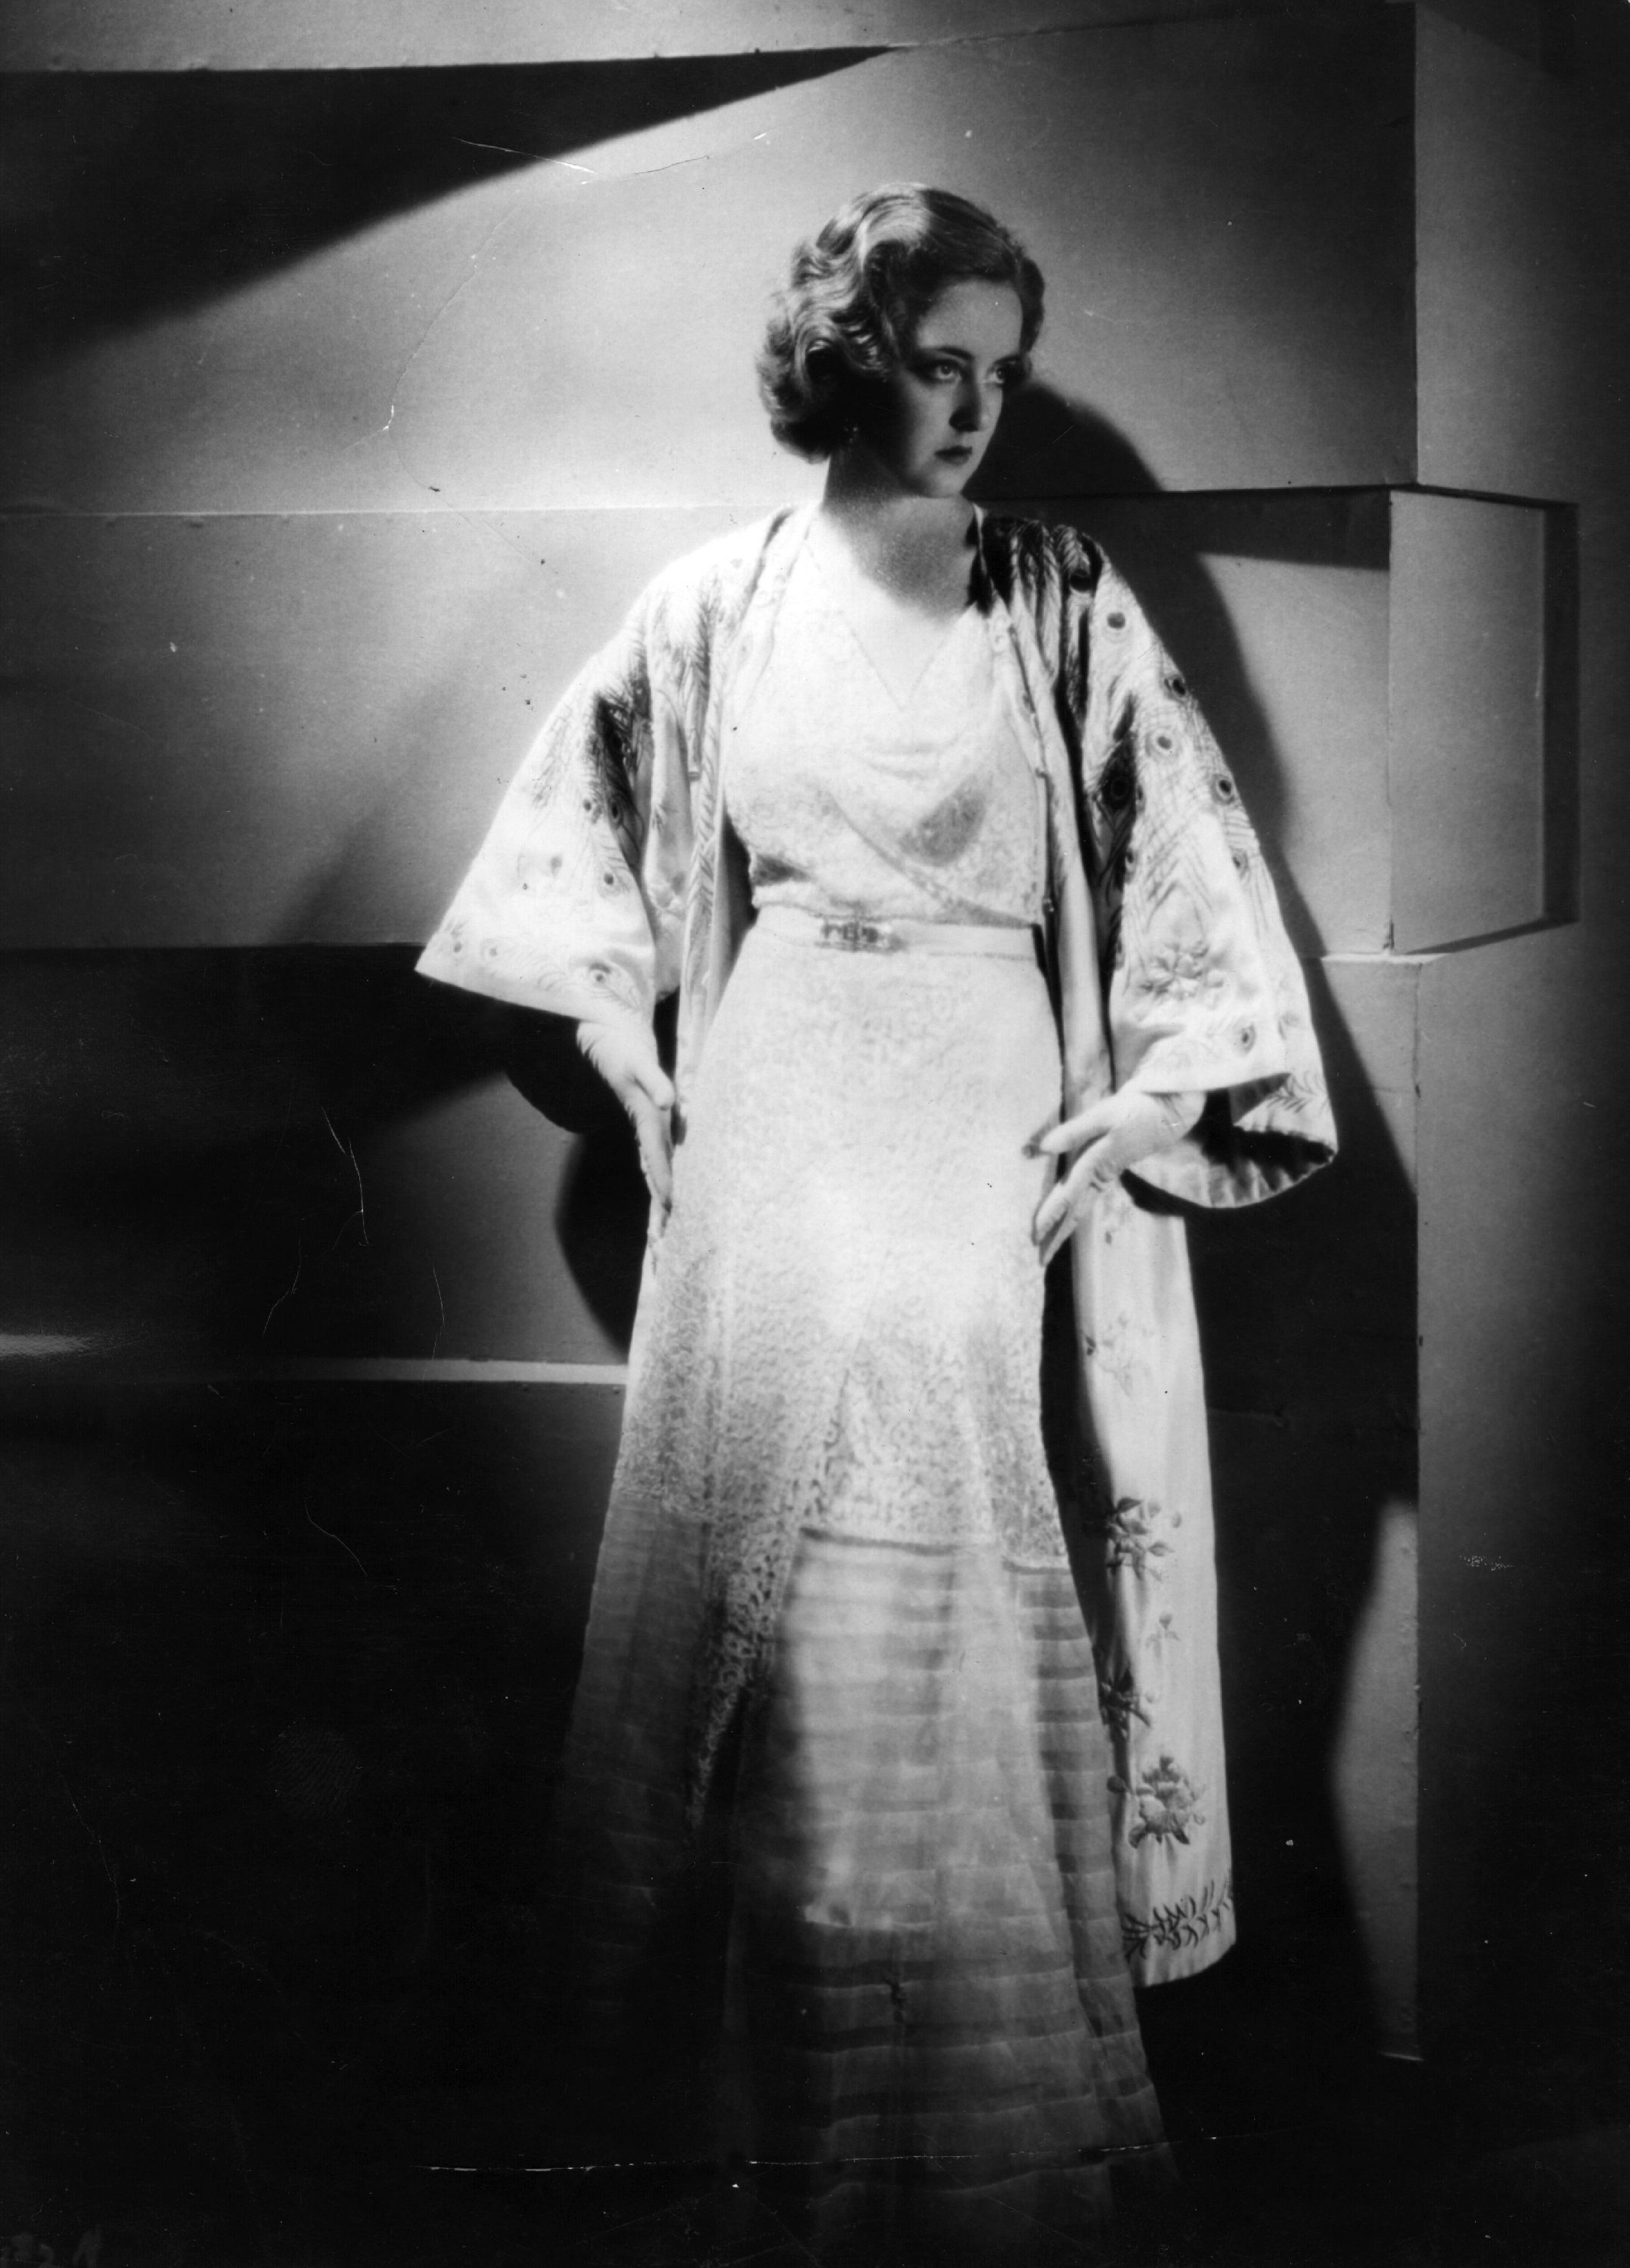 Кога започва всичко?<br />
Eдин звезден развод, засенчил филмова премиера - това е първата бримка в отношенията между тогава младите актриси Бети и Джоан. Първият публичен момент, когато двете са поставени в типичната за Холивуд надпревара между жени, е когато Джоан обявява, че се развежда през 1933 г. Тогава на голям екран излиза комедията Ex Lady с участието на Бети. Това, което го прави по-специален за Дейвис е, че за първи път името й е поместено на челно място  над надписа на "Уорнър брос". 